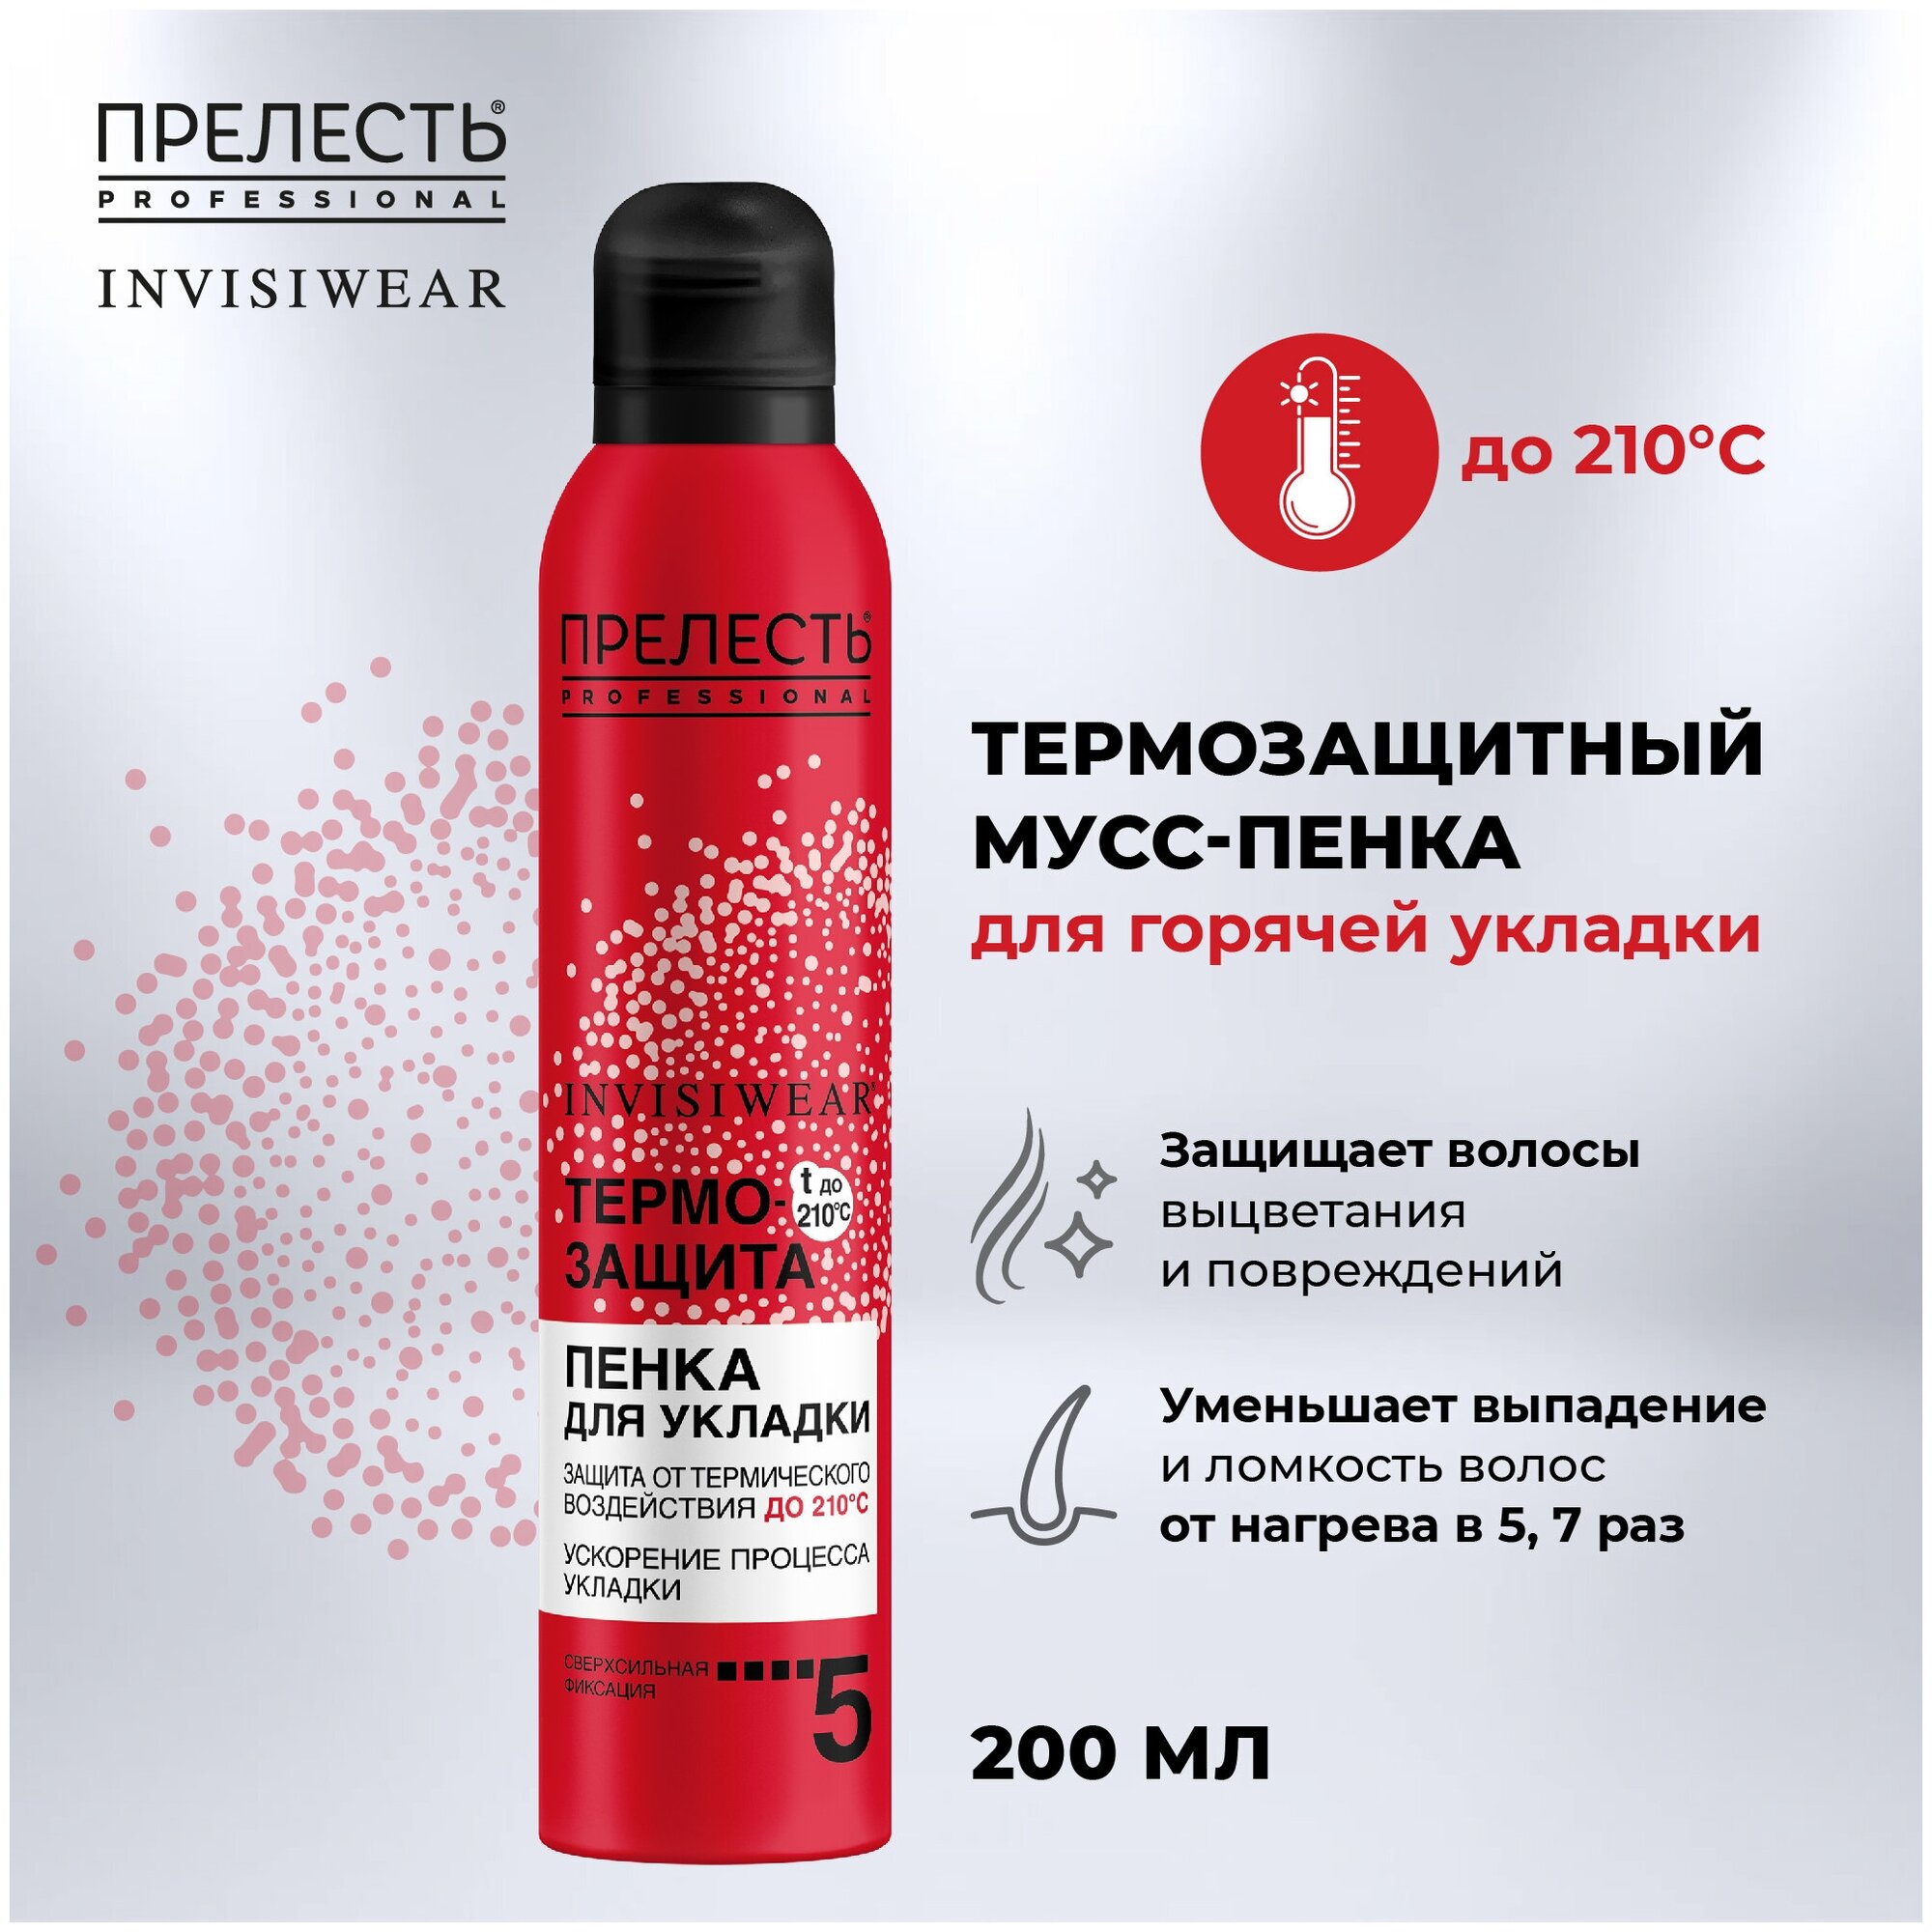 Термозащитный мусс-пенка для горячей укладки Прелесть Professional Invisiwear, 200 мл